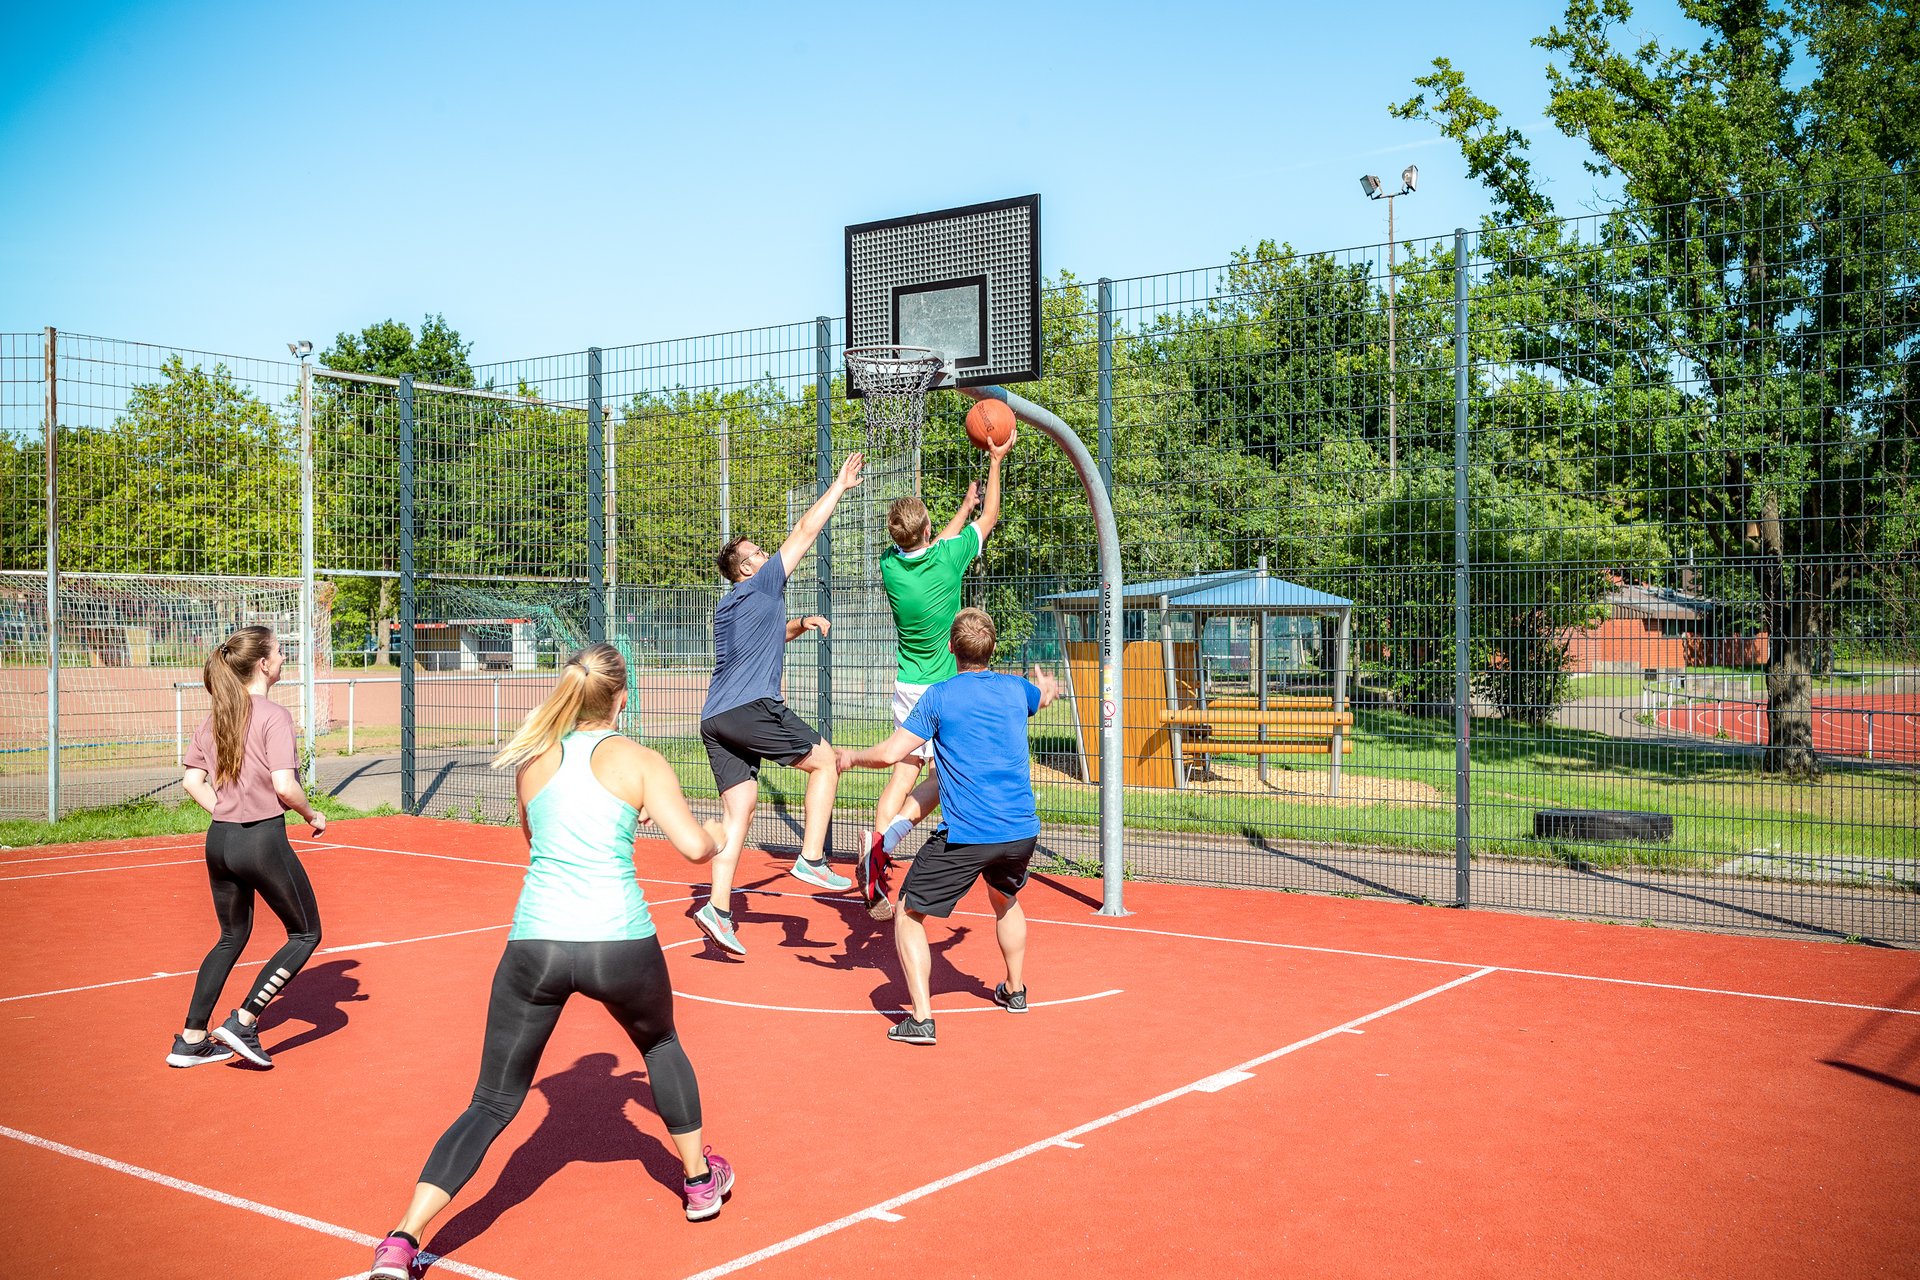 Das Bild zeigt junge Menschen, die auf eine Sportanalage im Freien Basketball spielen.